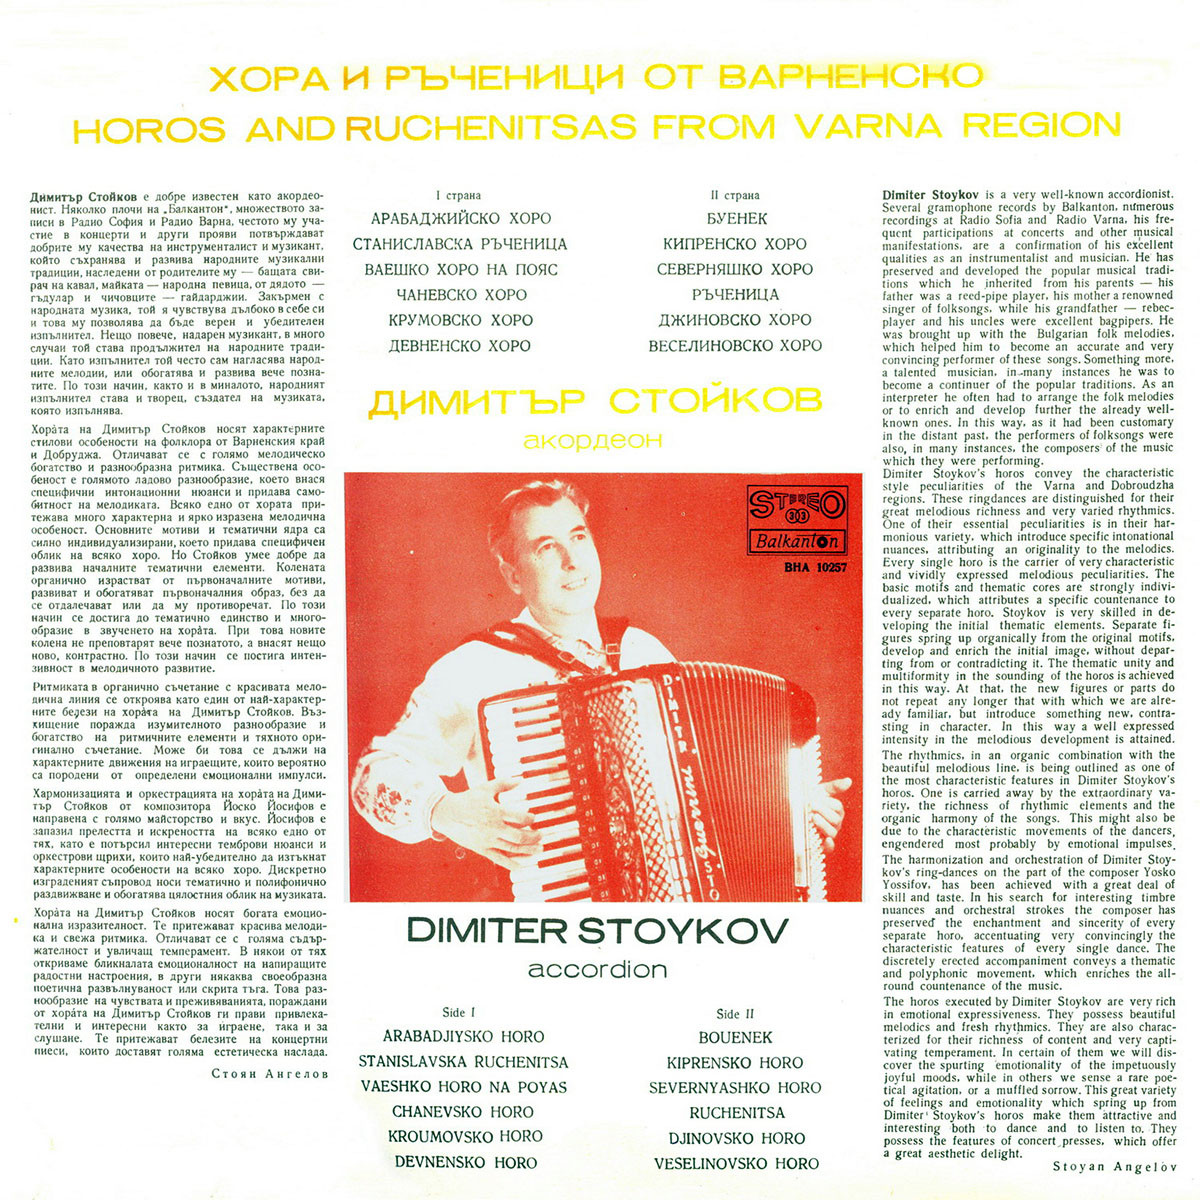 Димитър Стойков - акордеон. Хора и ръченици от Варненско